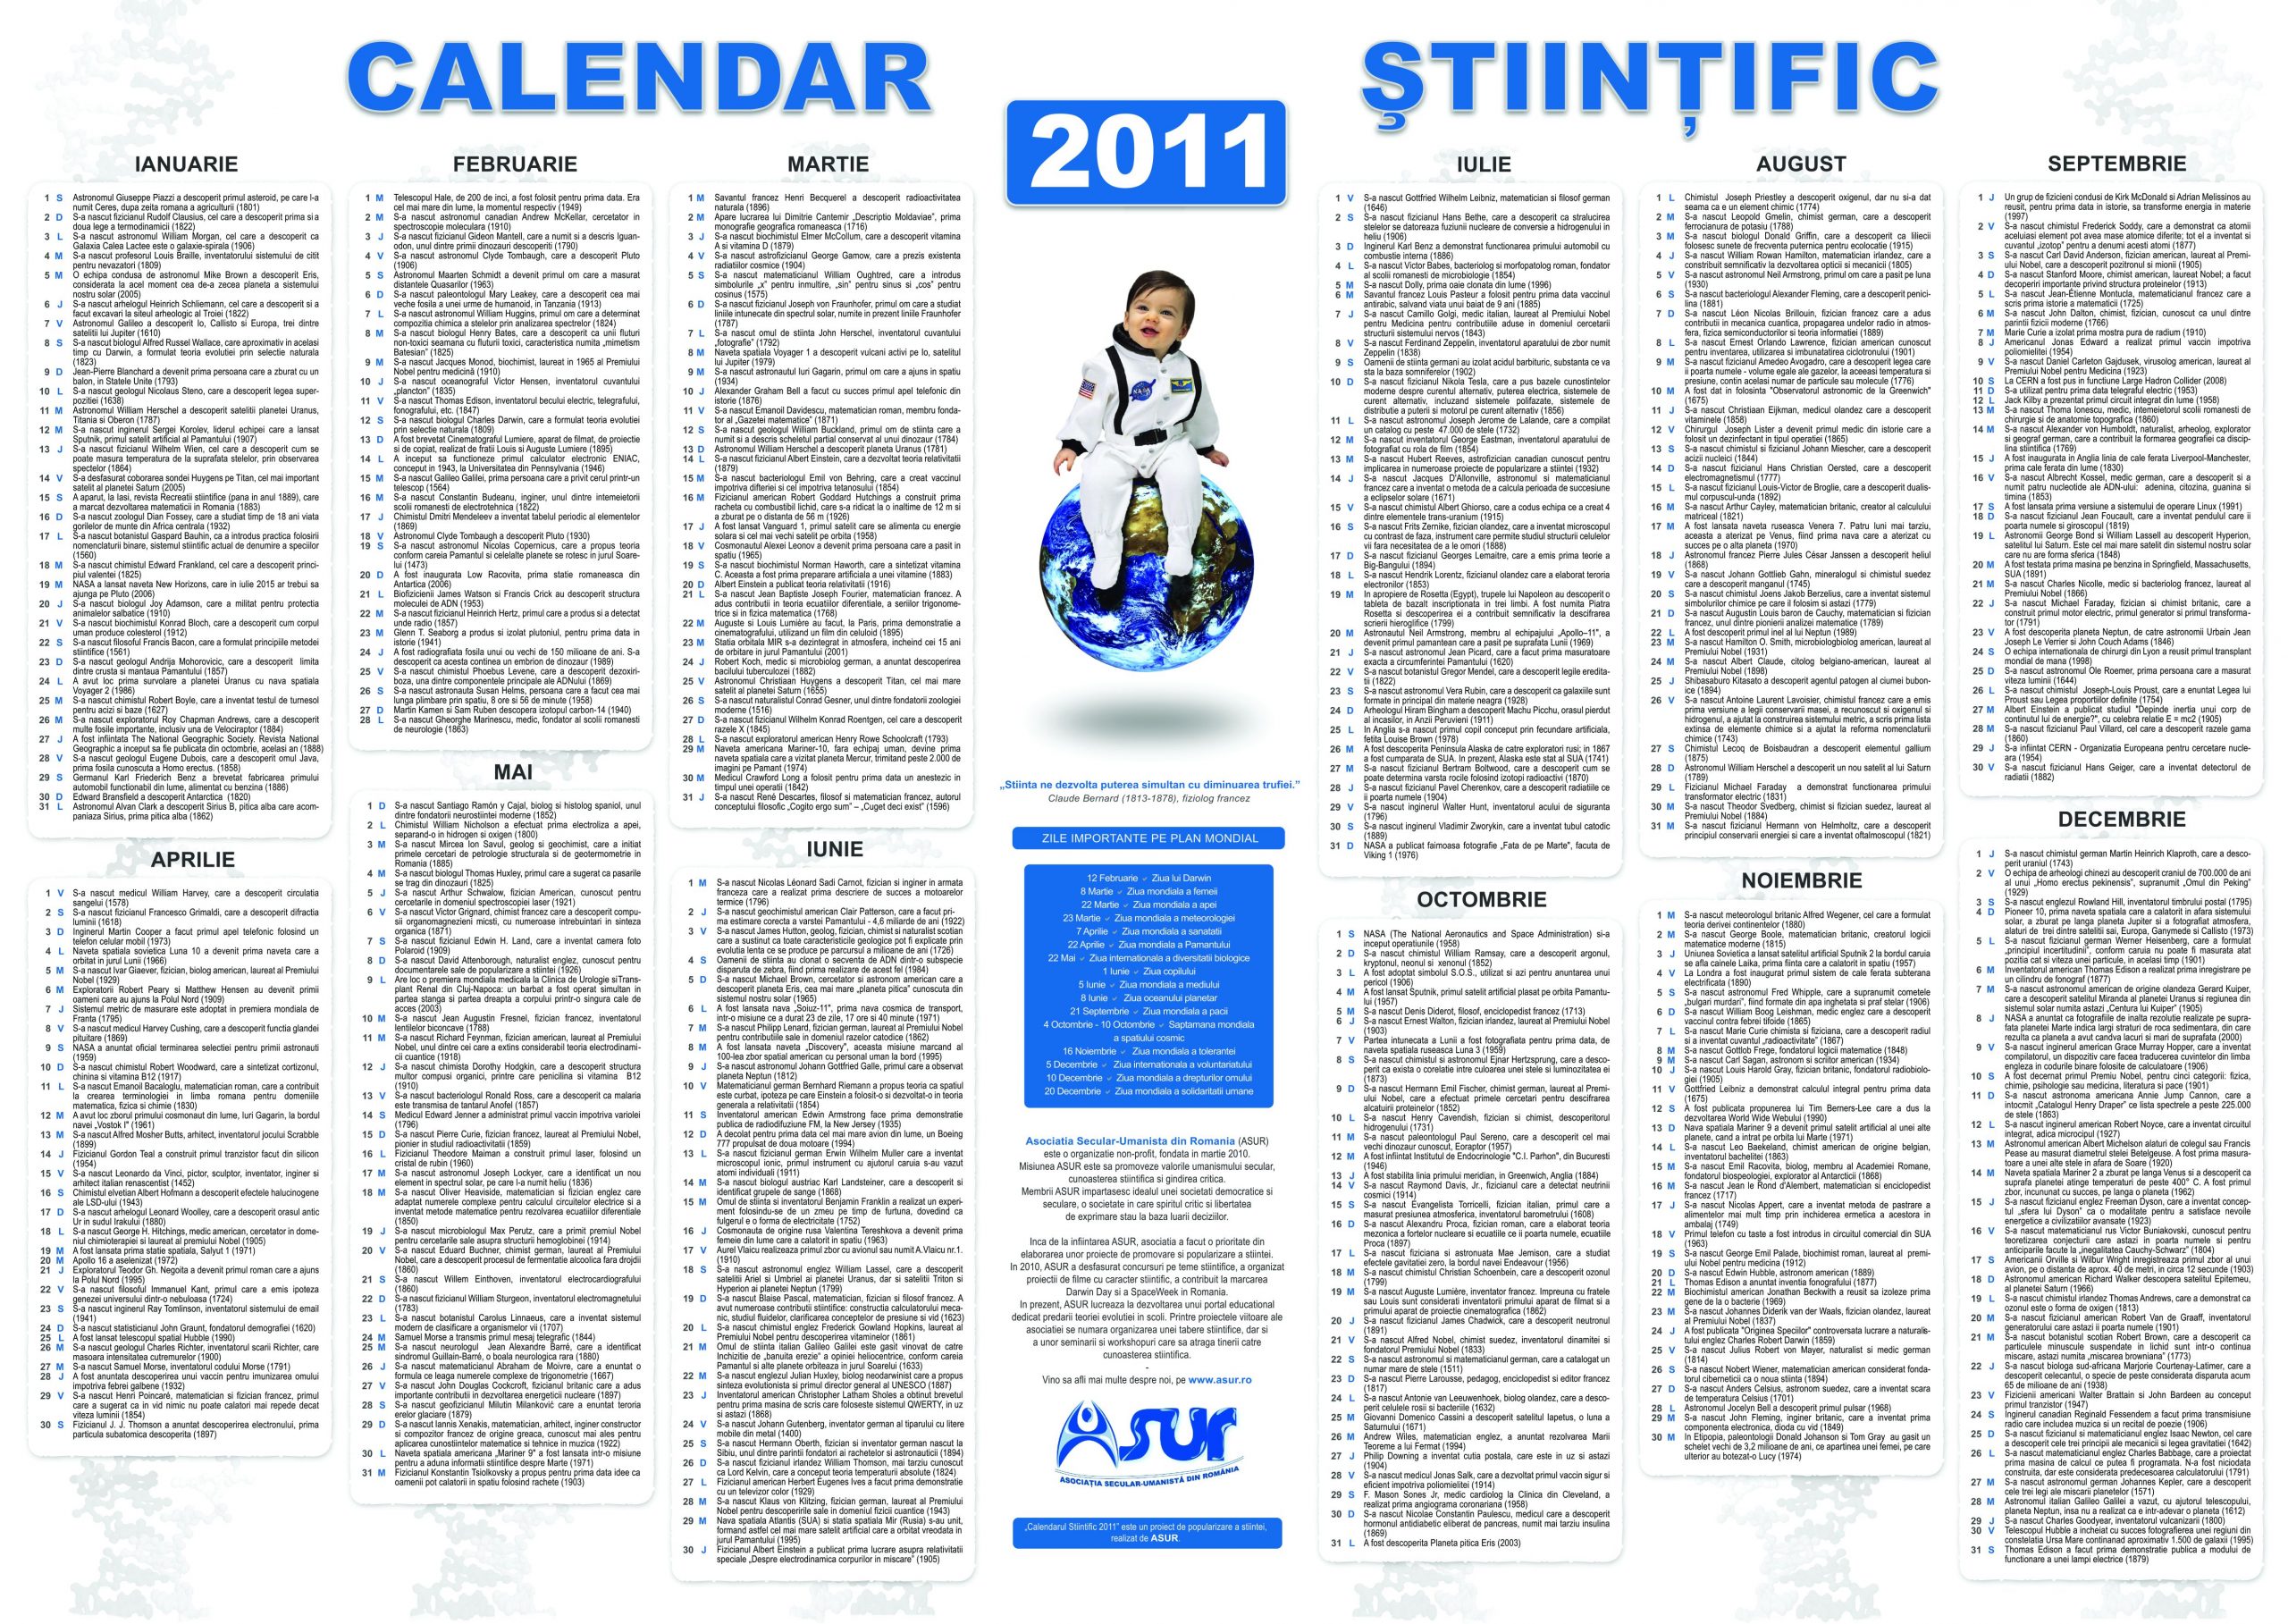 calendar stiintific 2011 prima editie